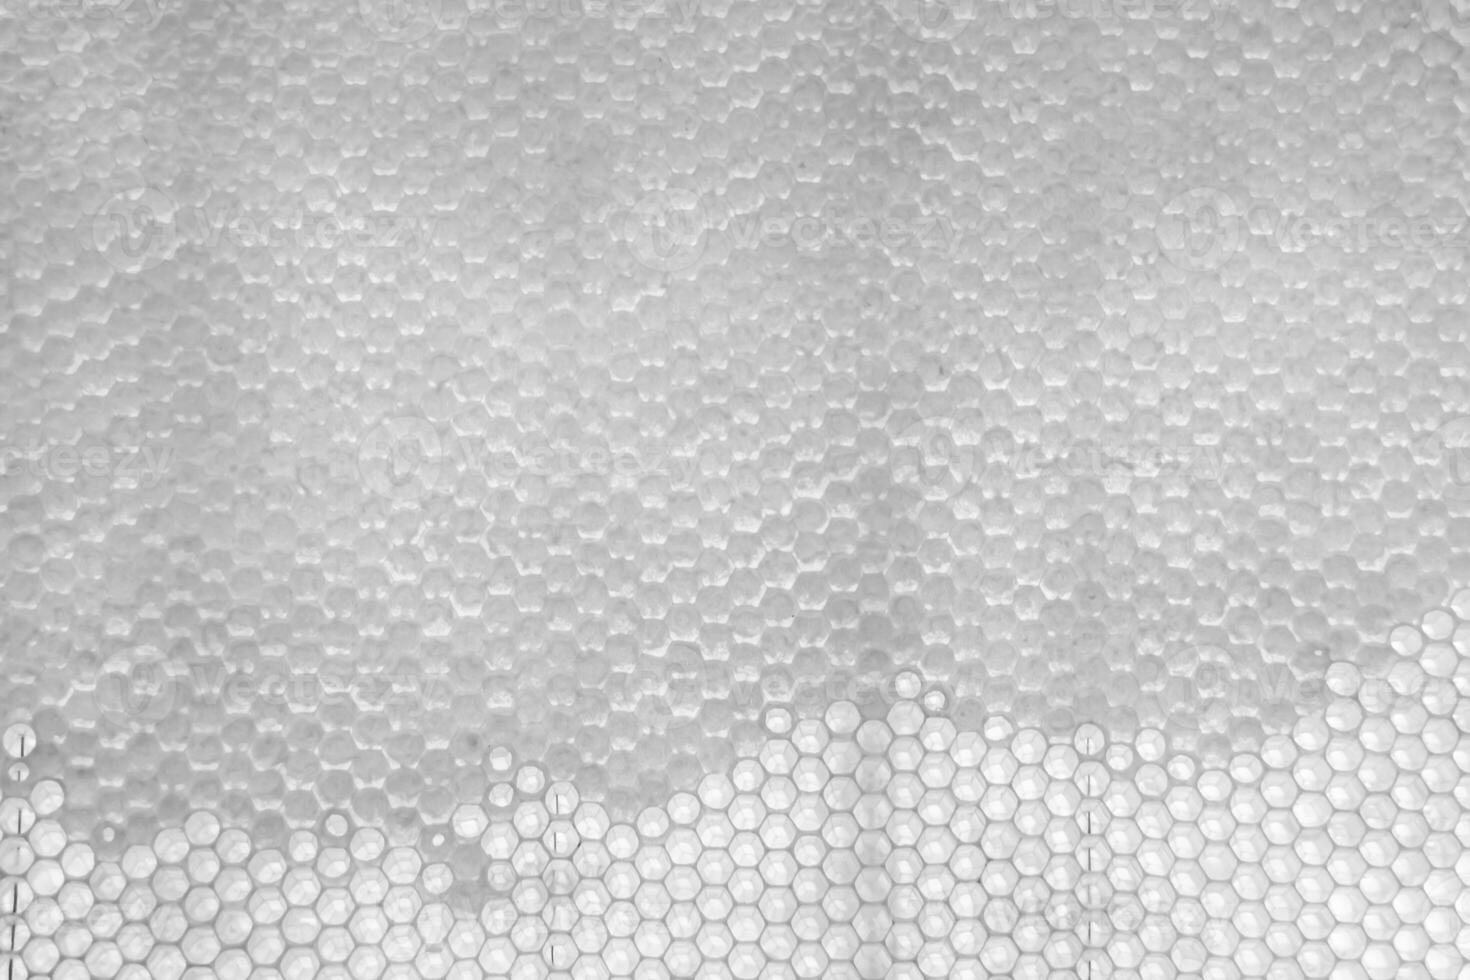 goutte de miel d'abeille goutte à goutte de nids d'abeilles hexagonaux remplis de nectar doré photo